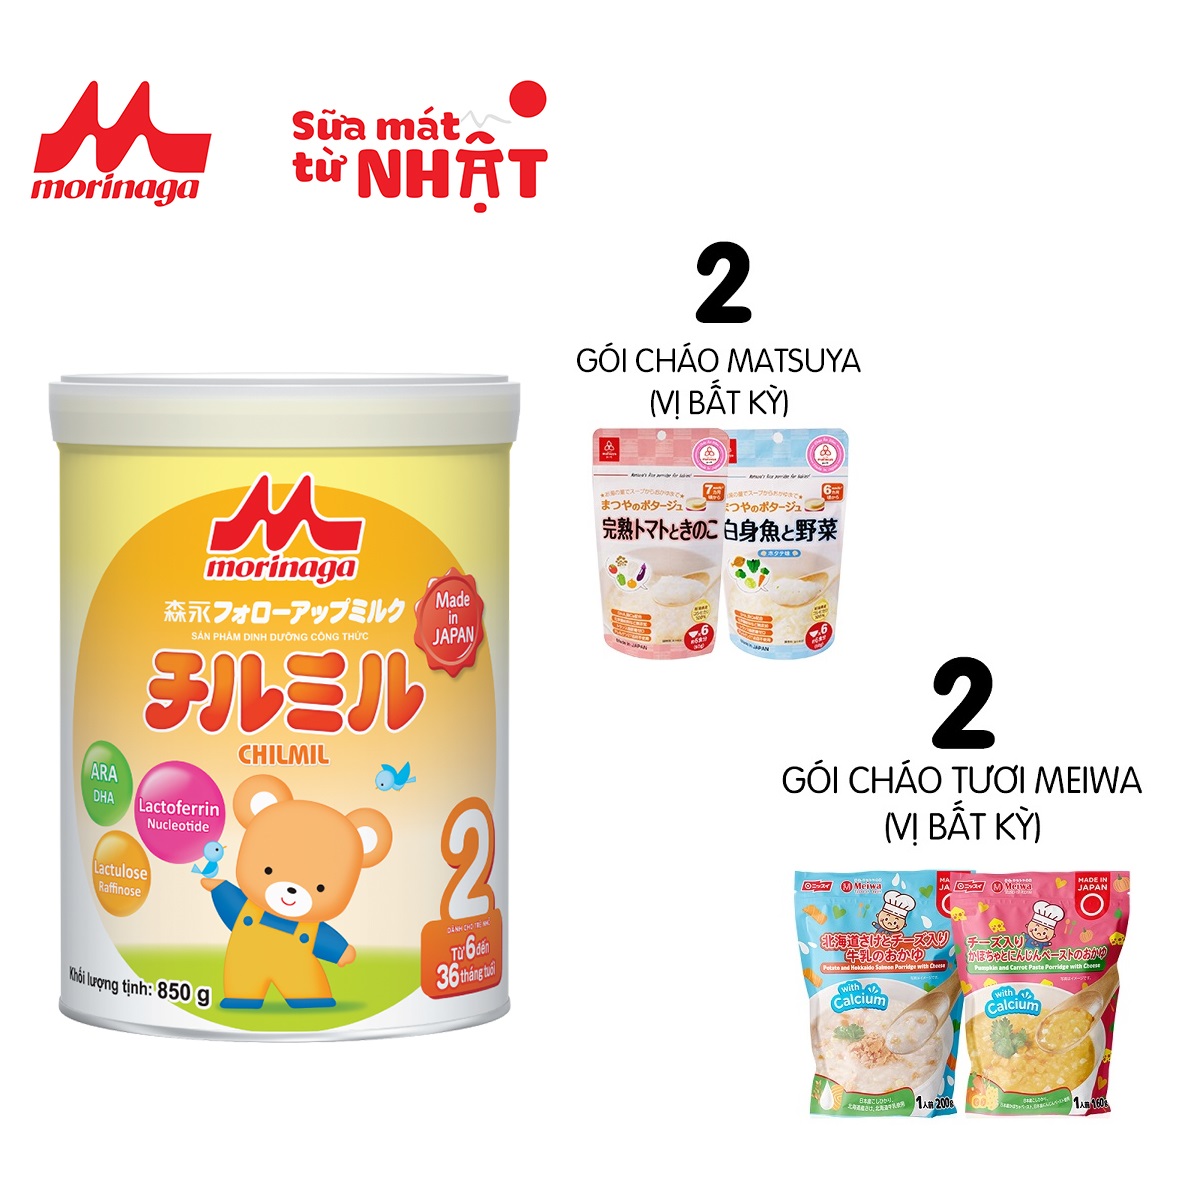 HCM Sữa Morinaga Số 2 Chilmil Nhật Bản 850g Nguyên đai tem chính hãng